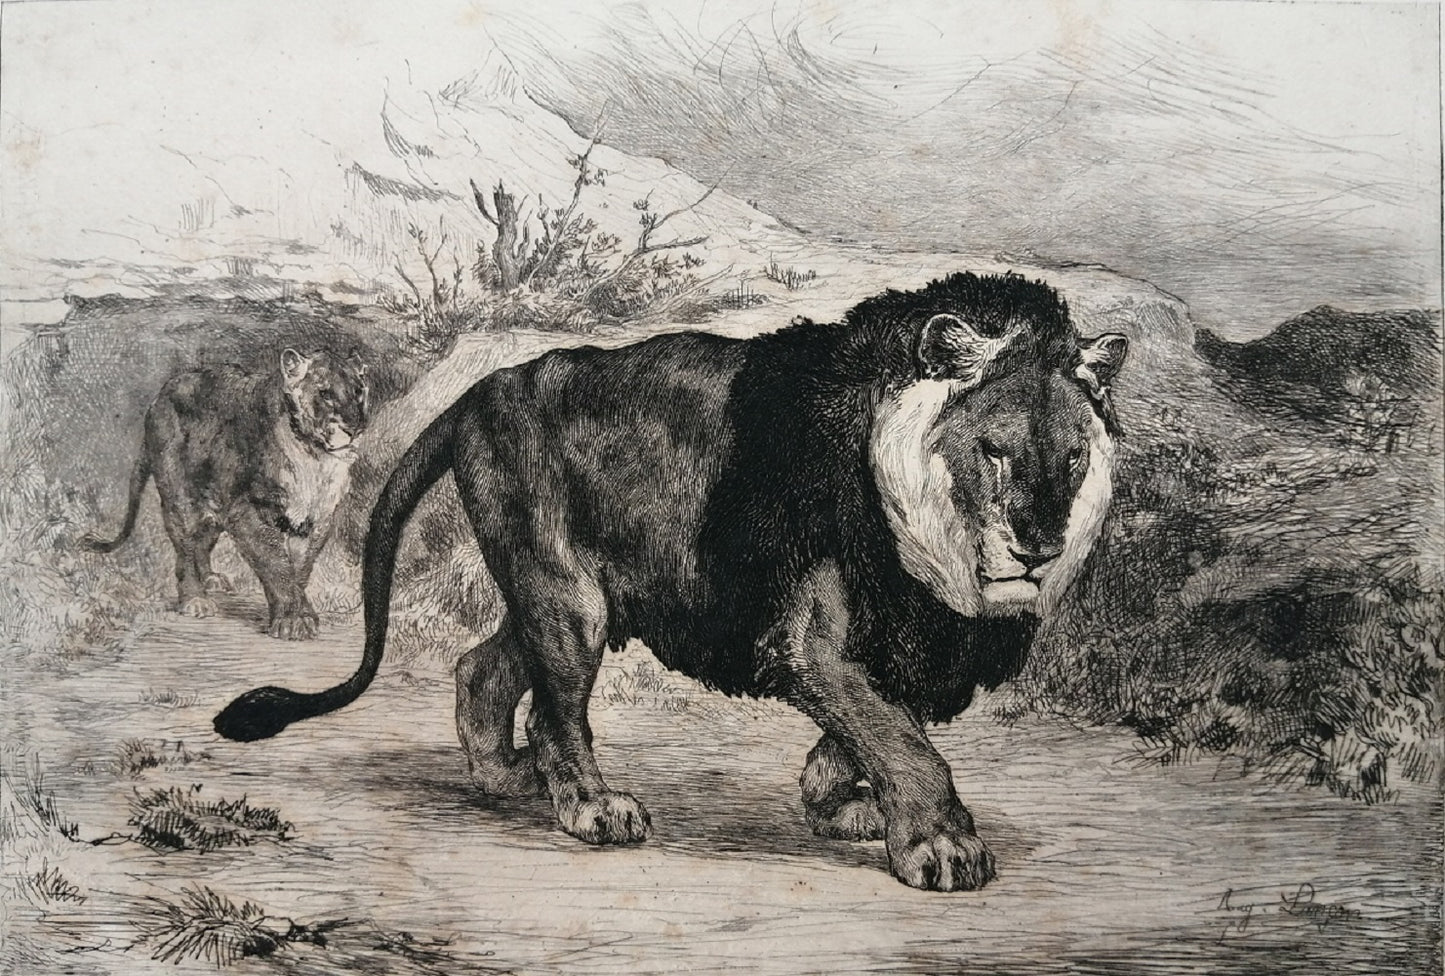 Lançon Lion et lionne de Nubie (1882)